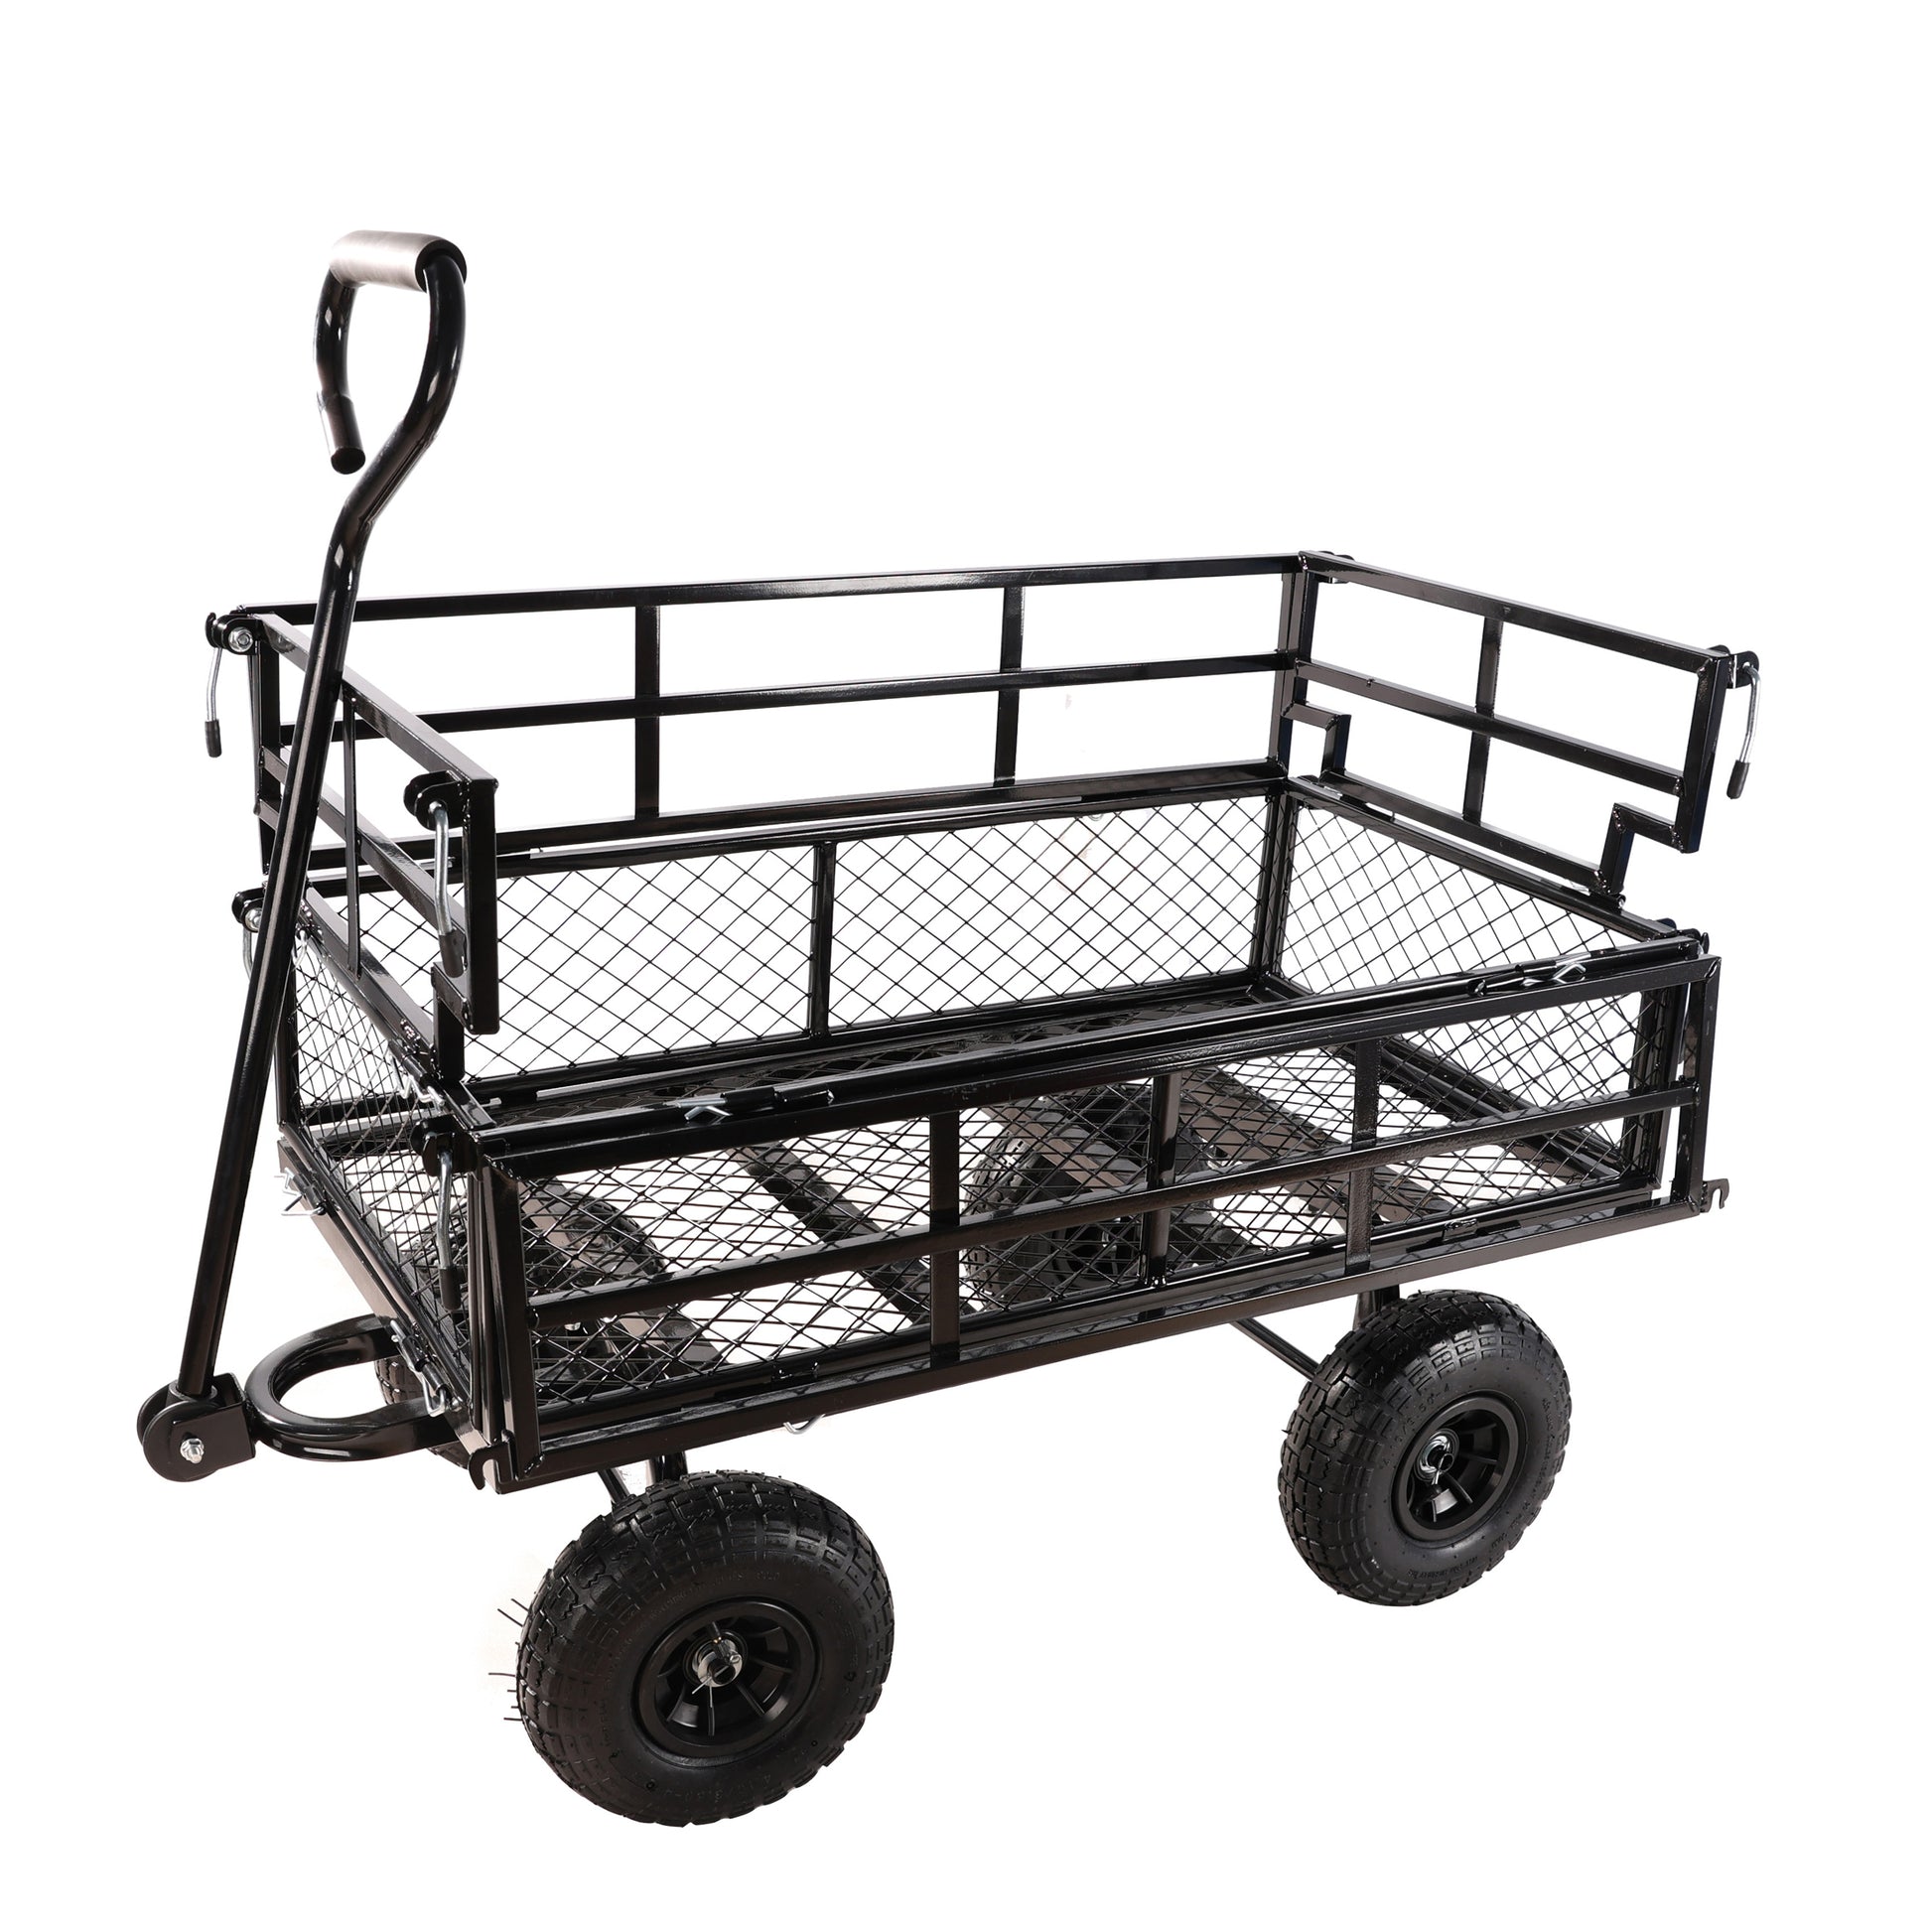 Black Double Fence Utility Cart Wagon Cart Garden